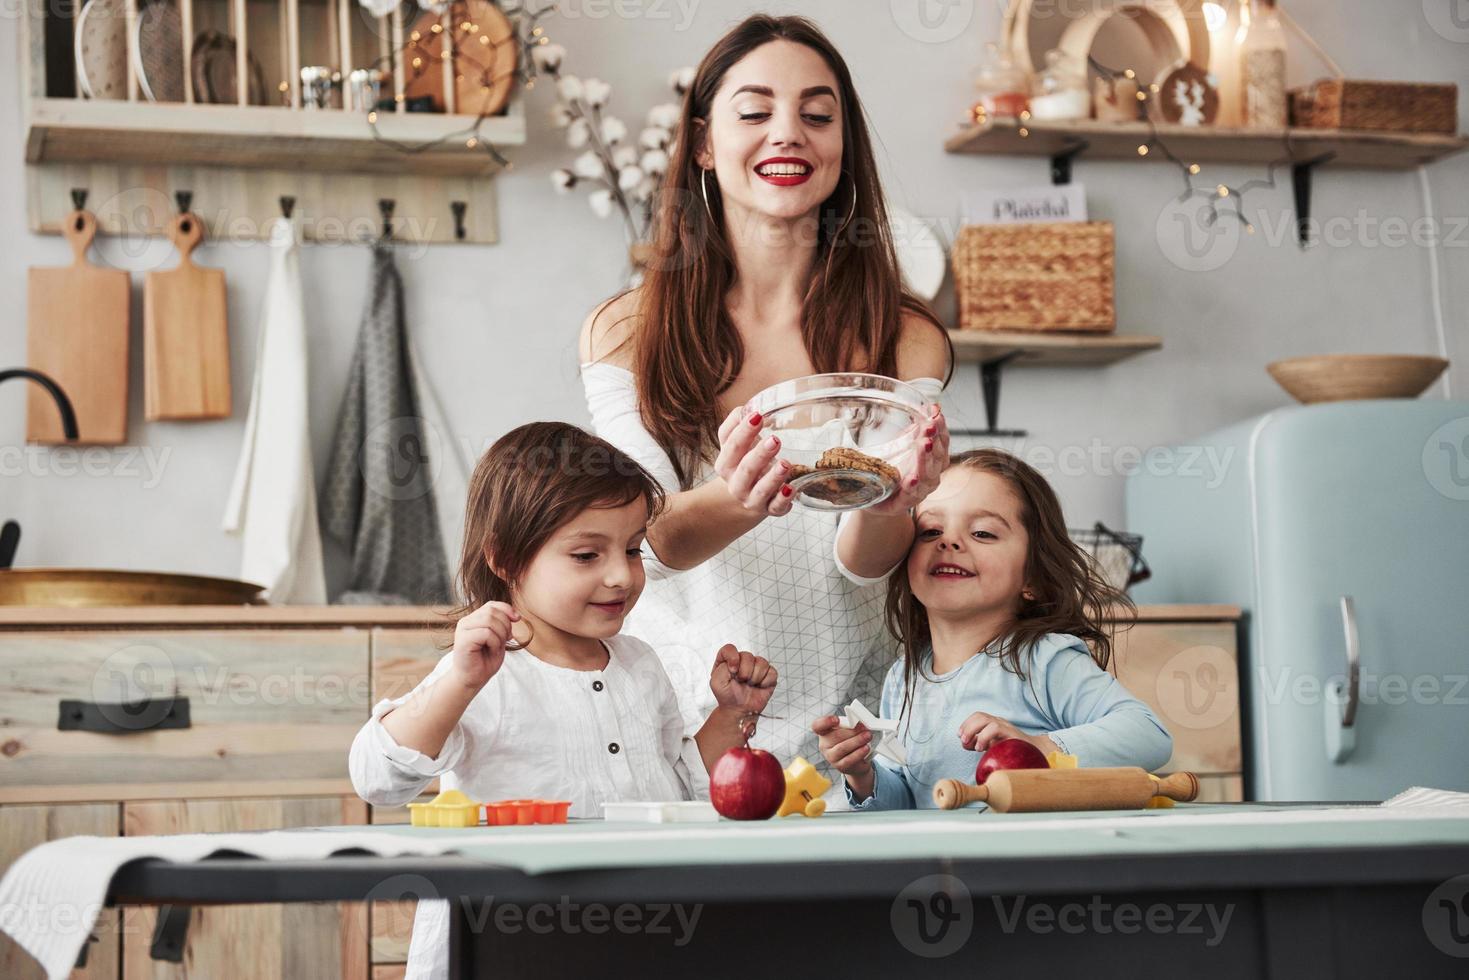 vissa godis kommer inte att störa. ung vacker kvinna ge kakorna medan de sitter nära bordet med leksaker foto